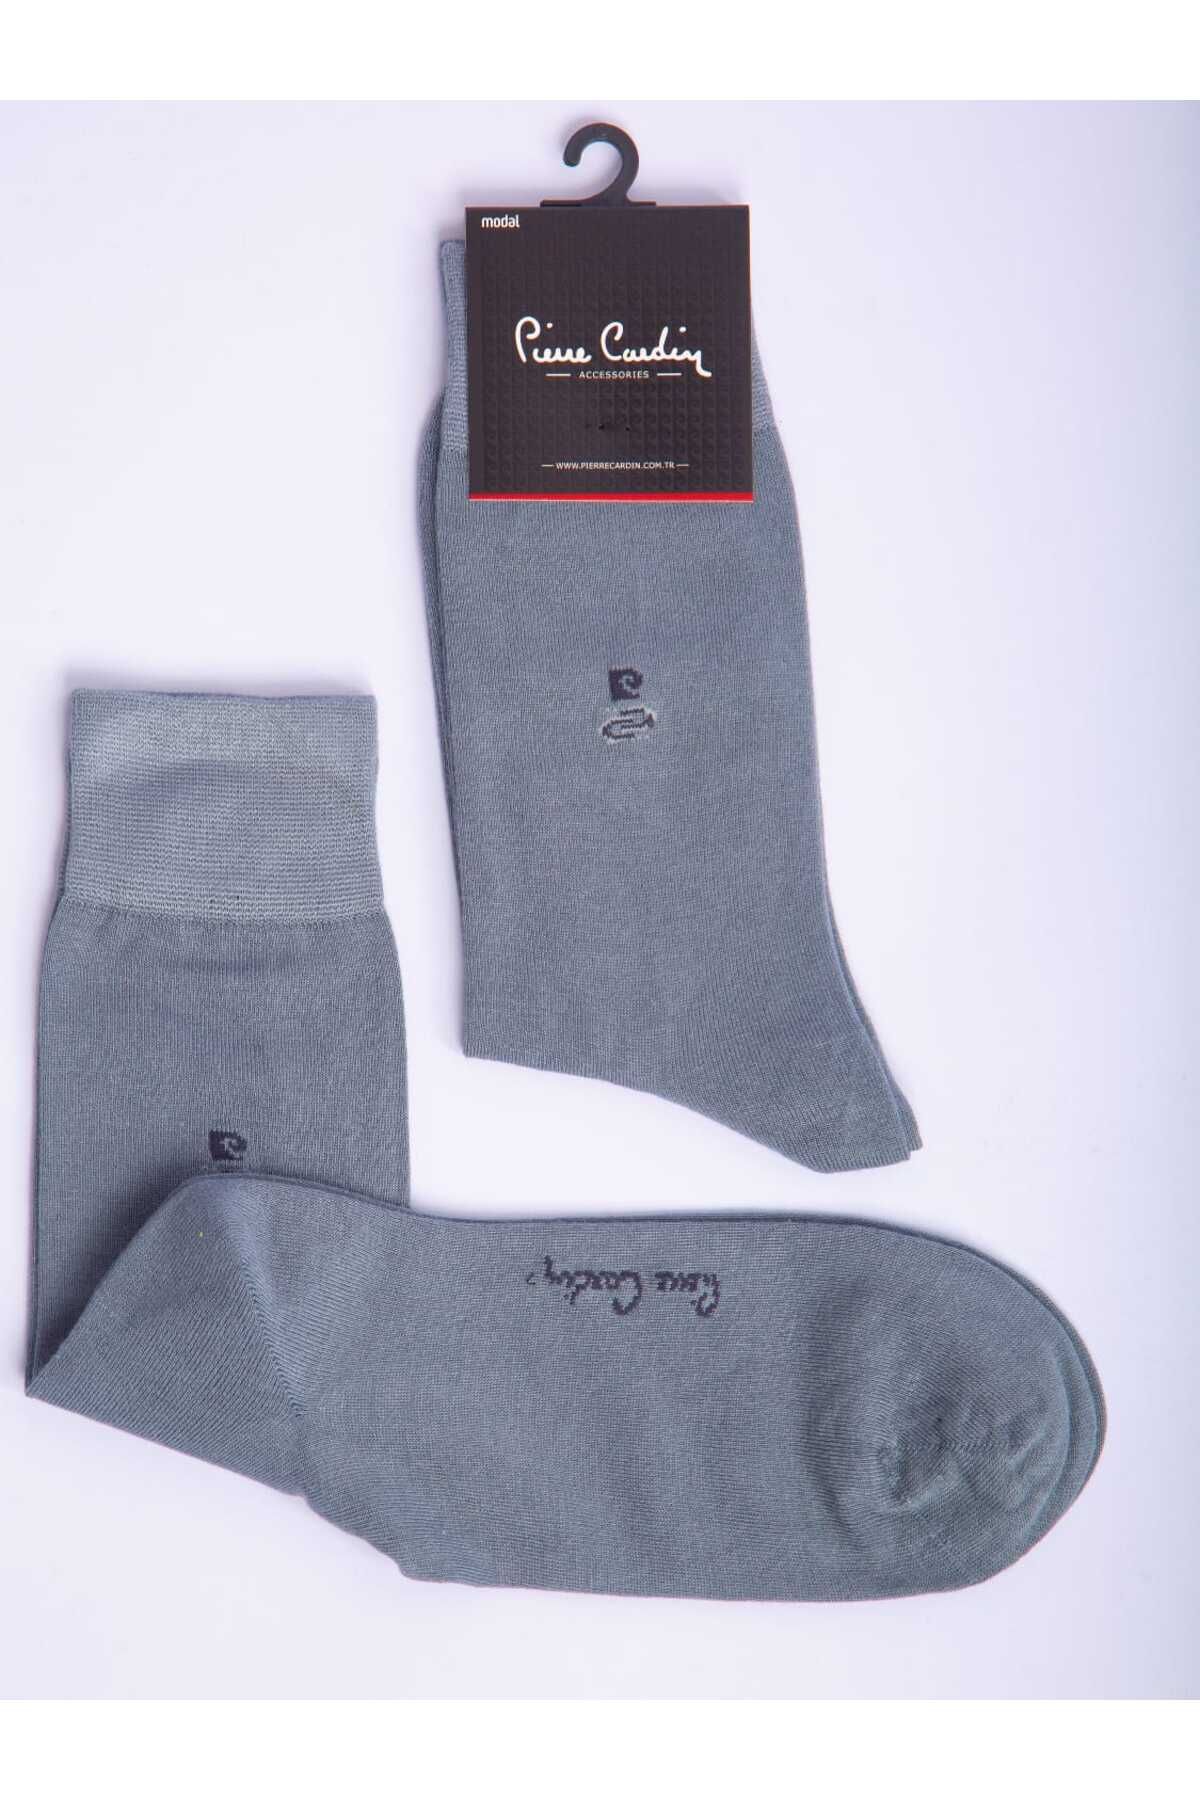 Pierre Cardin Modal Tekli Gri Renkli Erkek Uzun Soket Çorap Code 294